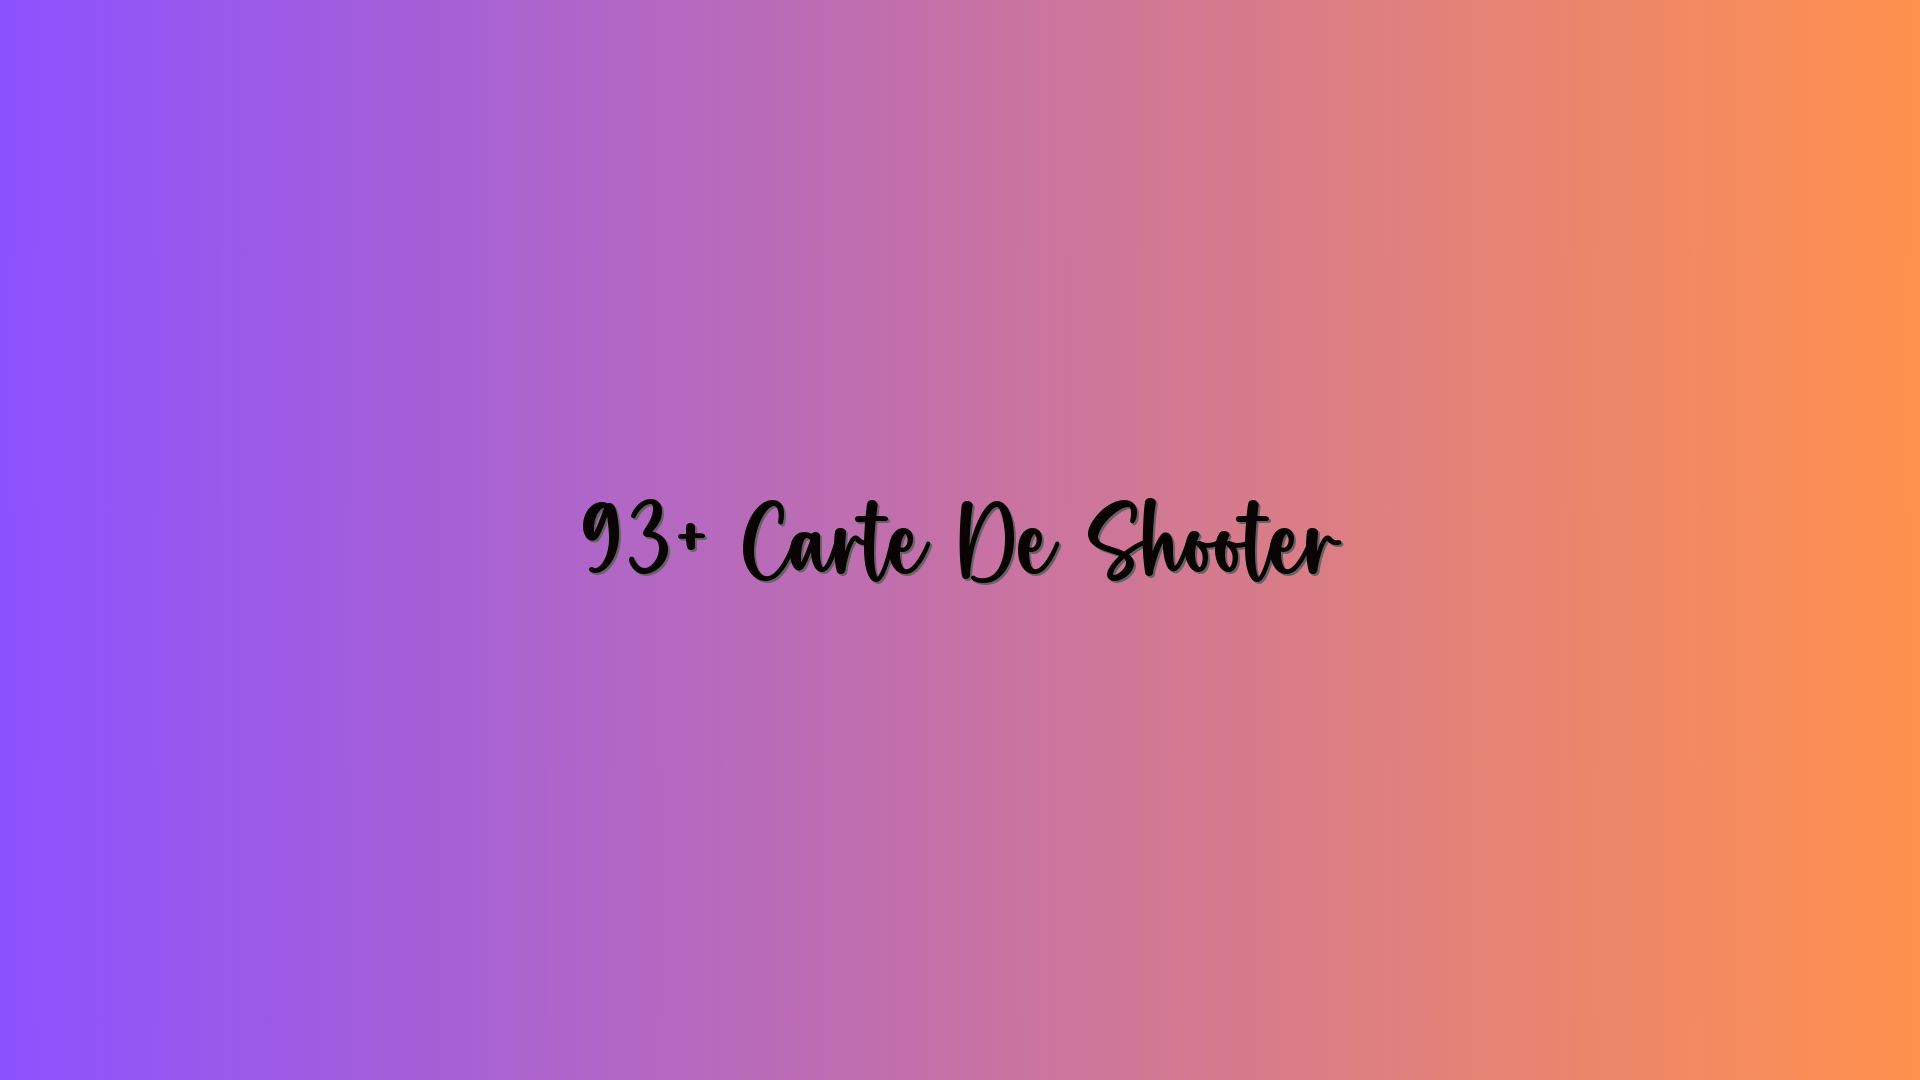 93+ Carte De Shooter